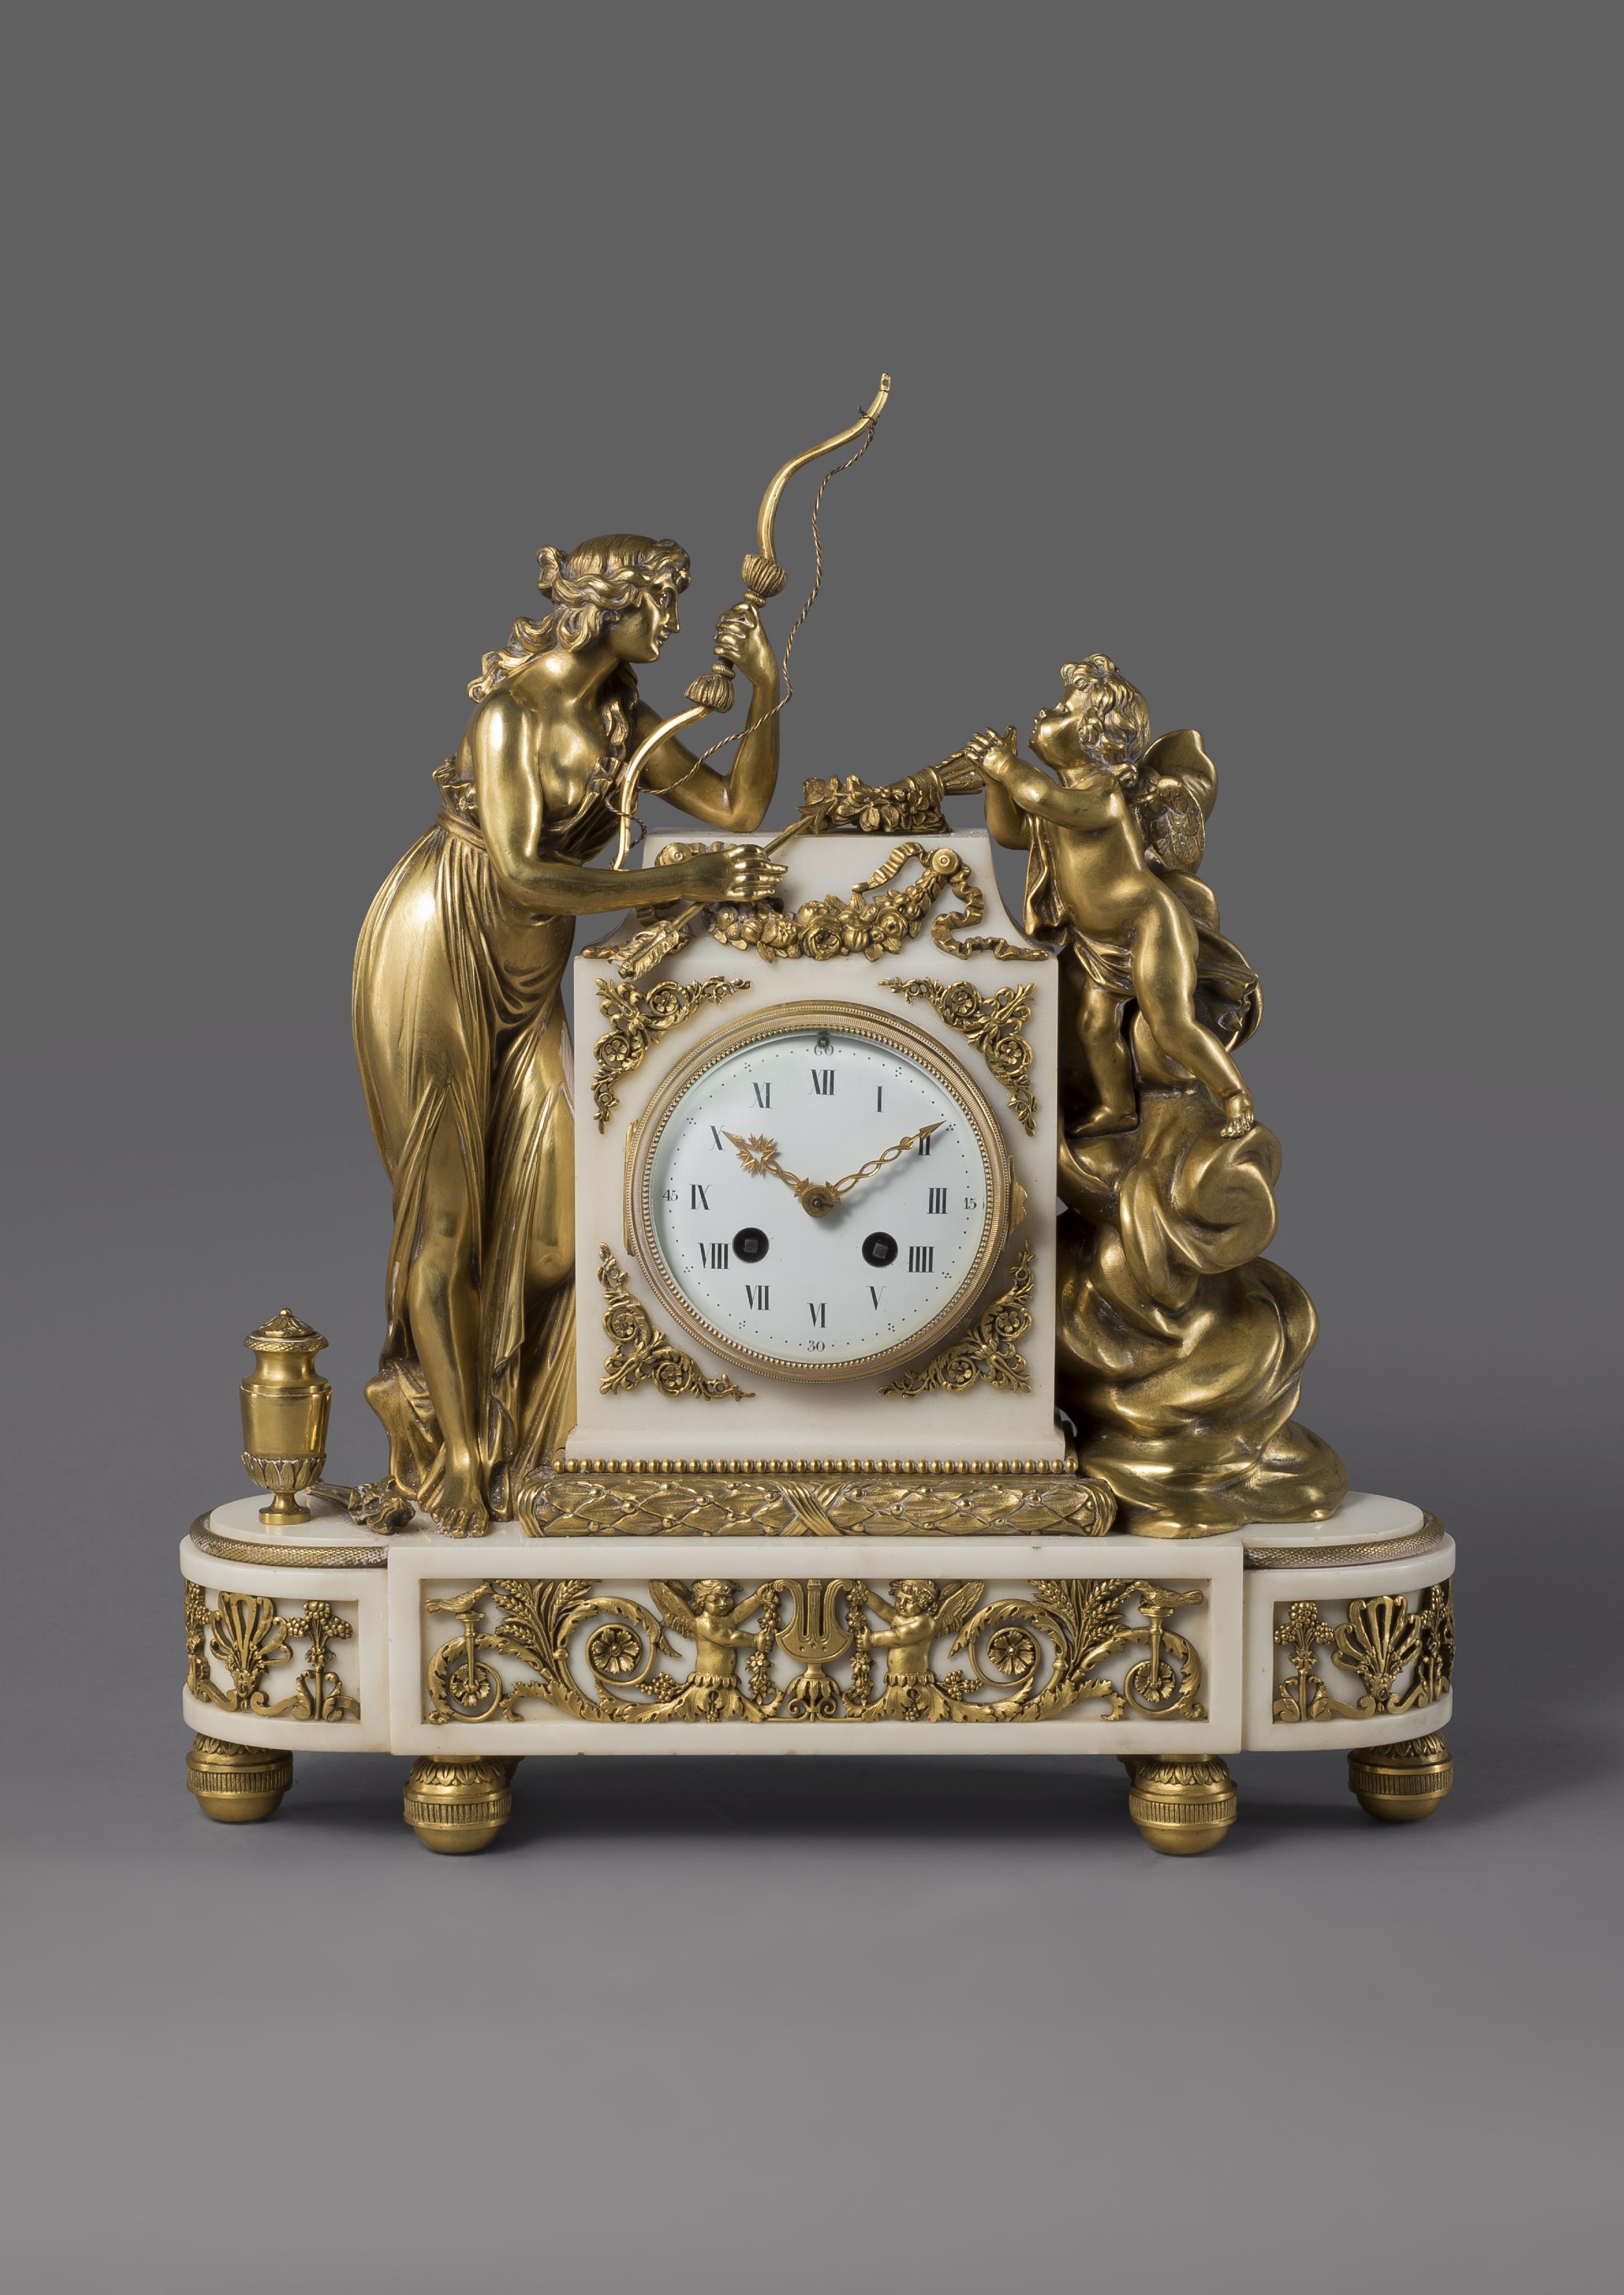 Eine schöne Uhr im Stil Louis XVI aus vergoldeter Bronze und weißem Marmor, die Diana und Amor darstellt, von François Linke. 

Frankreich, um 1890. 

Signiert auf der Bronze 'Linke'. 

Dieses seltene Exemplar einer Uhr von François Linke hat